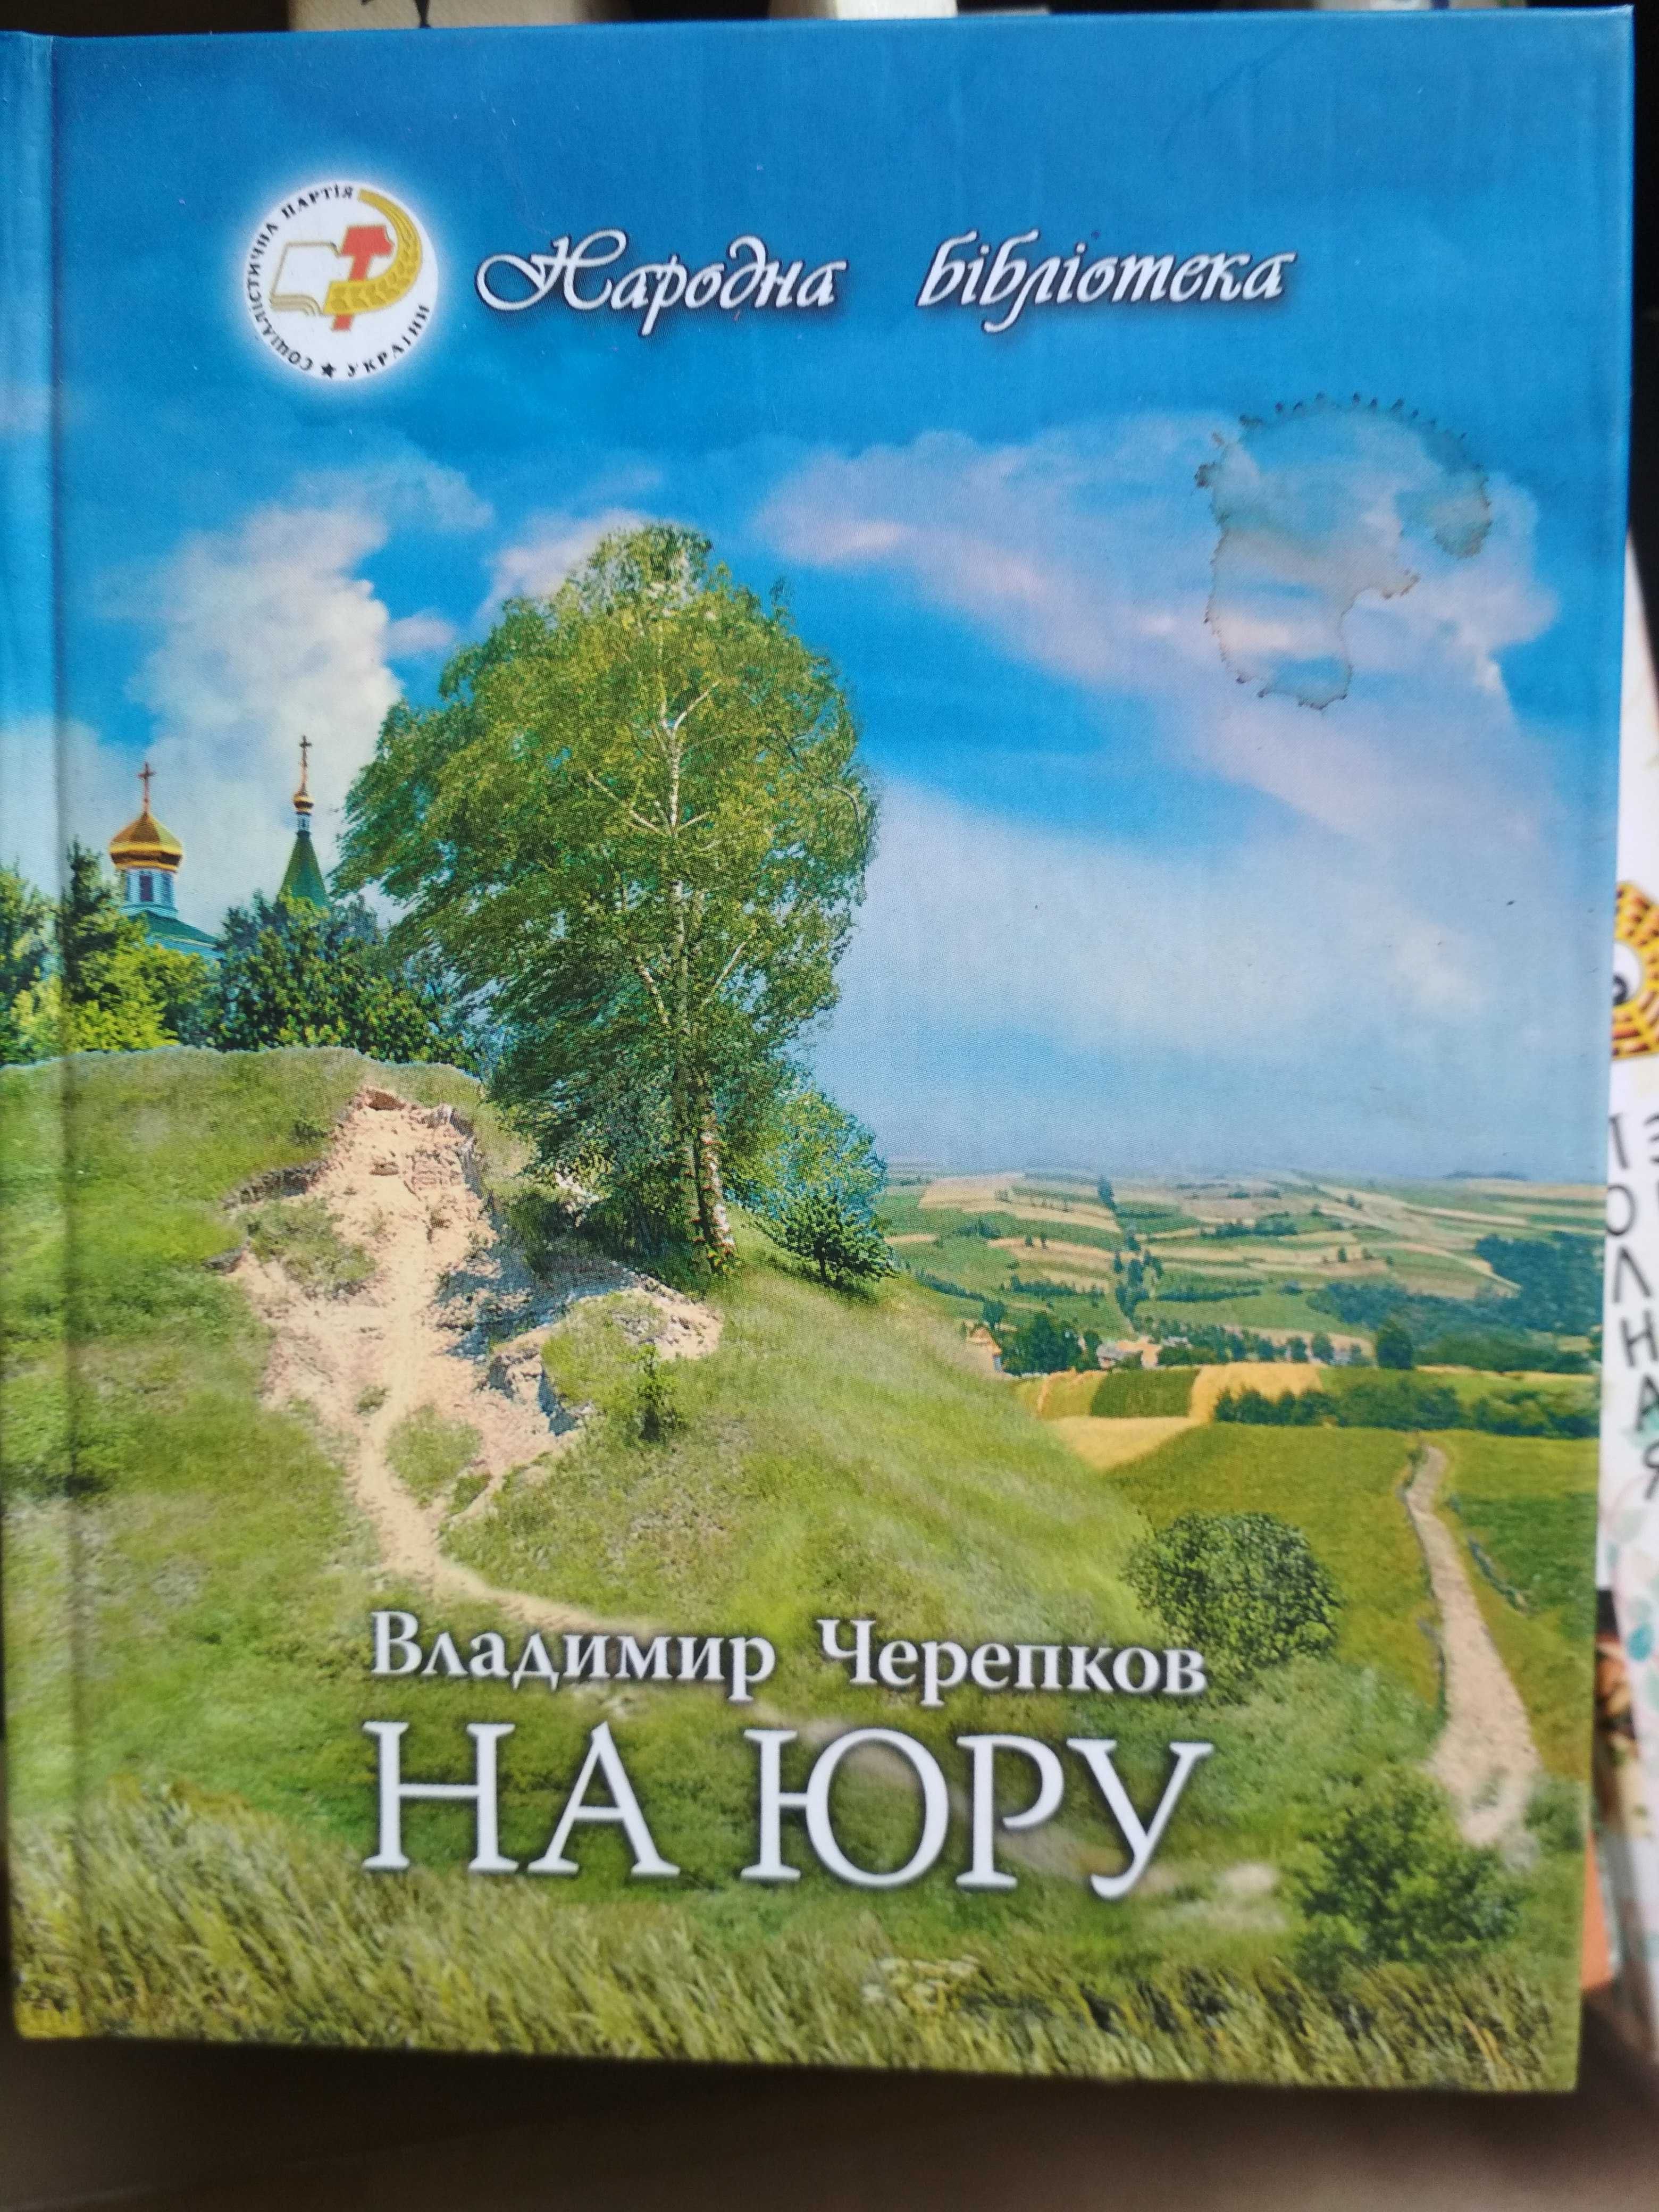 Історія Києва та інші книги